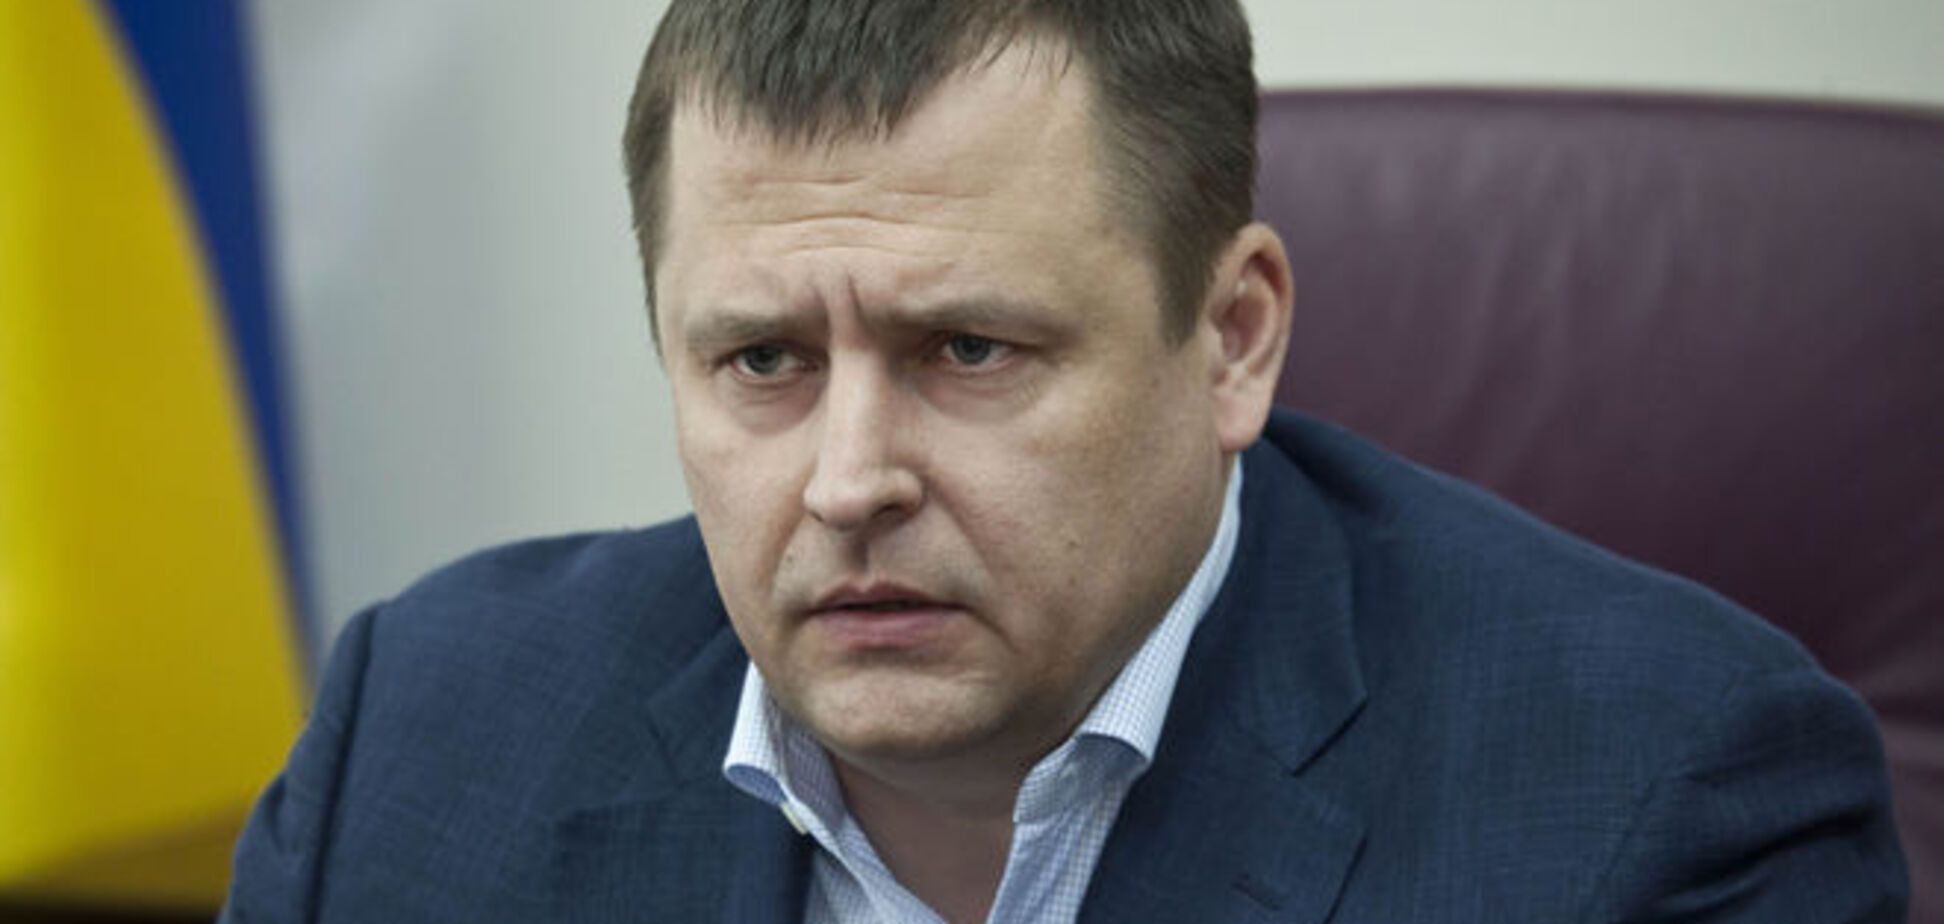 Филатов призвал Наливайченко извиниться за 'аморальную ложь'